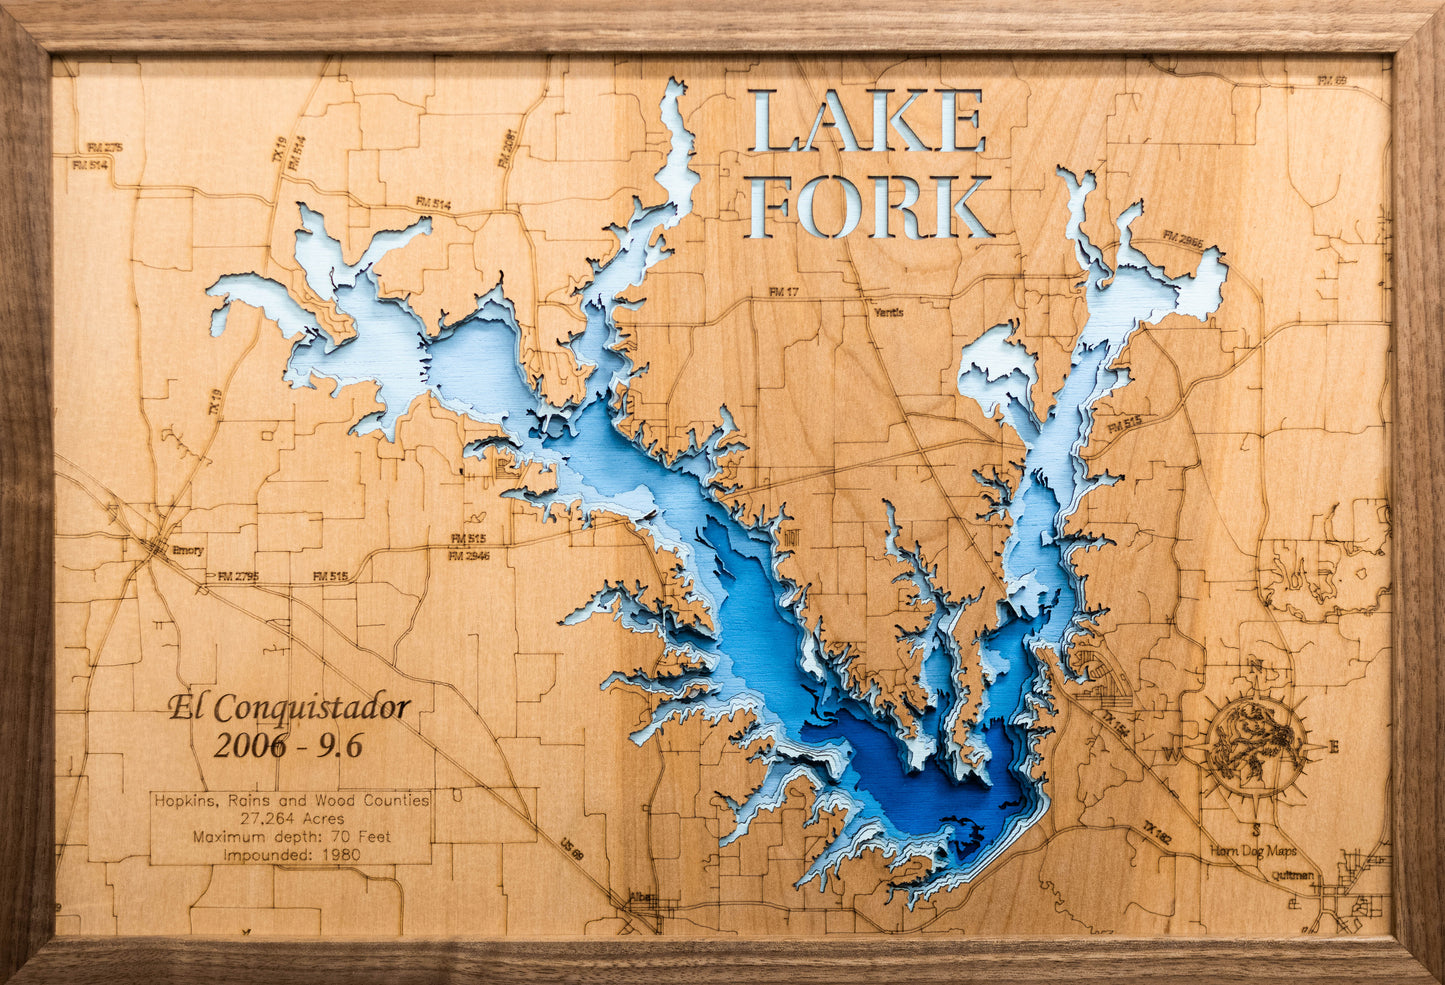 Lake Fork in Hopkins, Rain, and Wood County, Texas